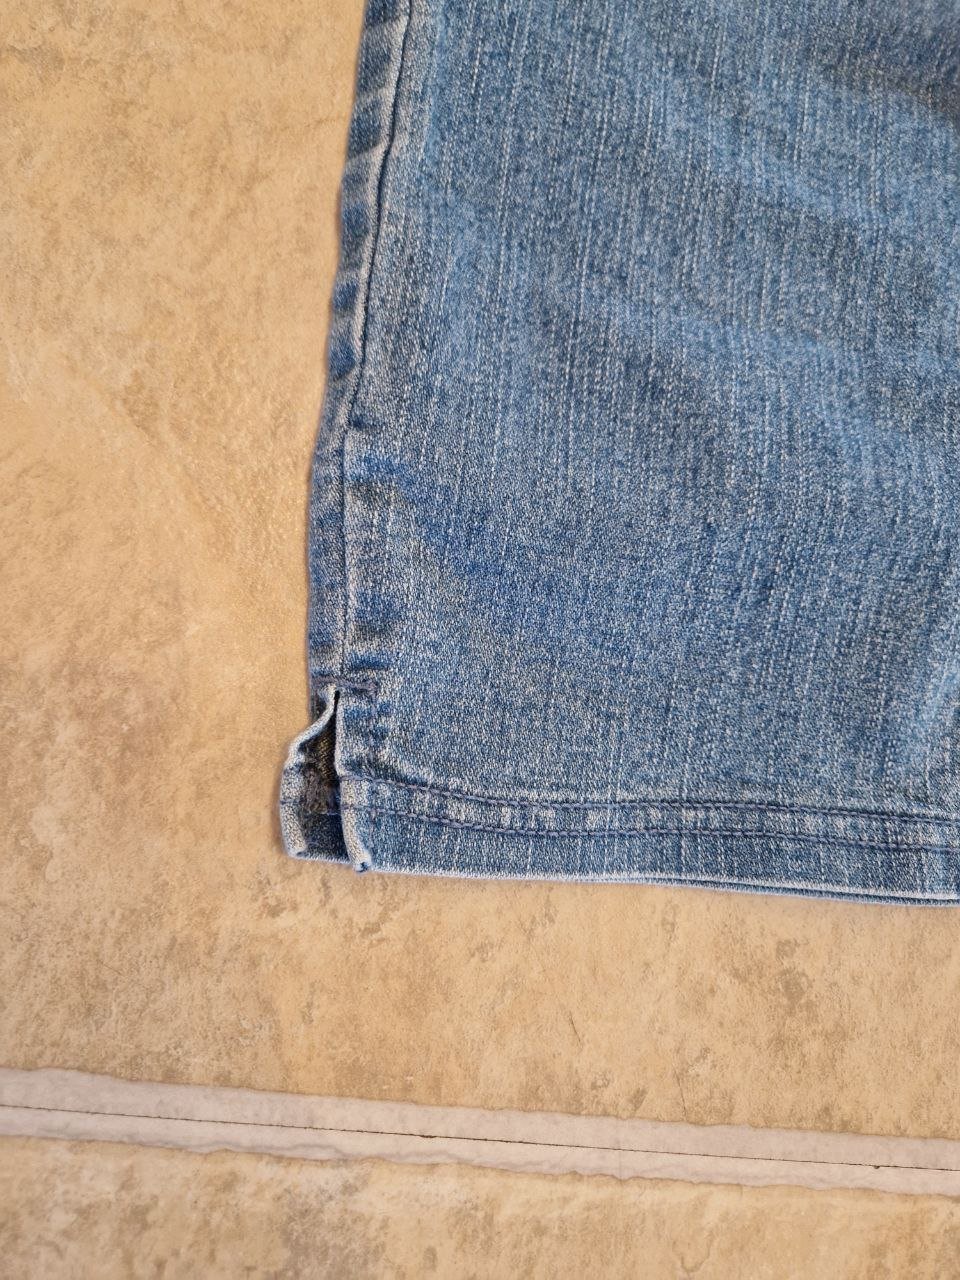 Nygard. Stylische blaue Caprihose, Jeans, Jeggins. Größe L ( 14 ). Baumwolle + Elastan. Taillenumfang 83-88 cm. Lange 85 cm. Hüftumfang 84 cm. Gewaschen. Ordentlich gepflegter Zustand. Es gibt keine Garantie und Rückerstattung.